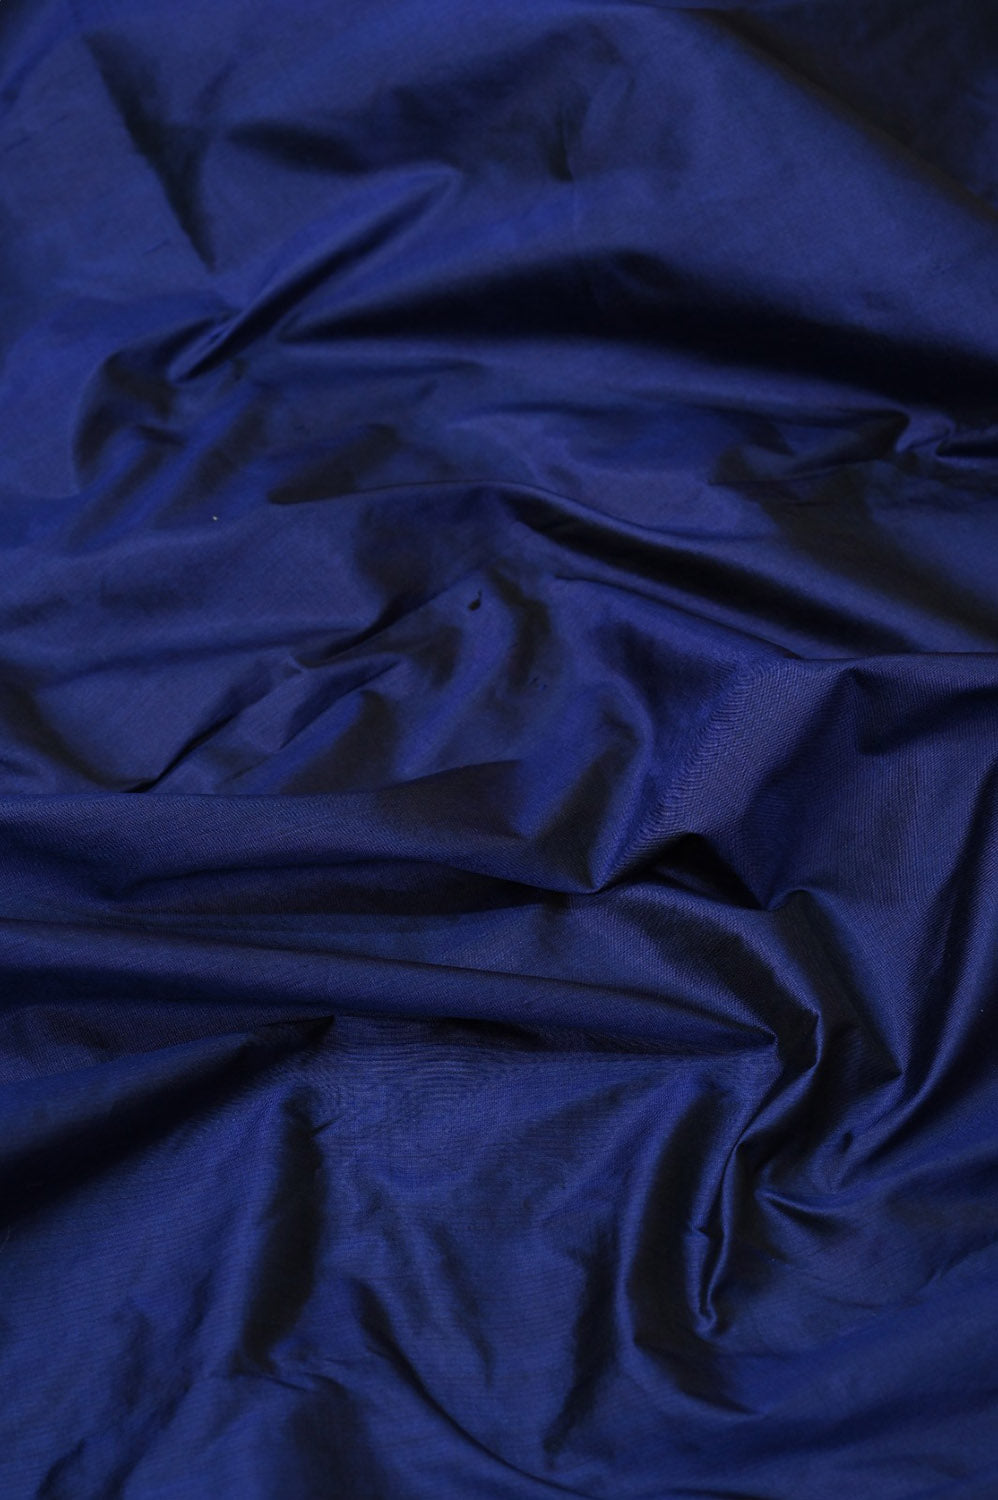 Stunning Blue Banarasi Handloom Katan Silk Suit Set - Luxurion World